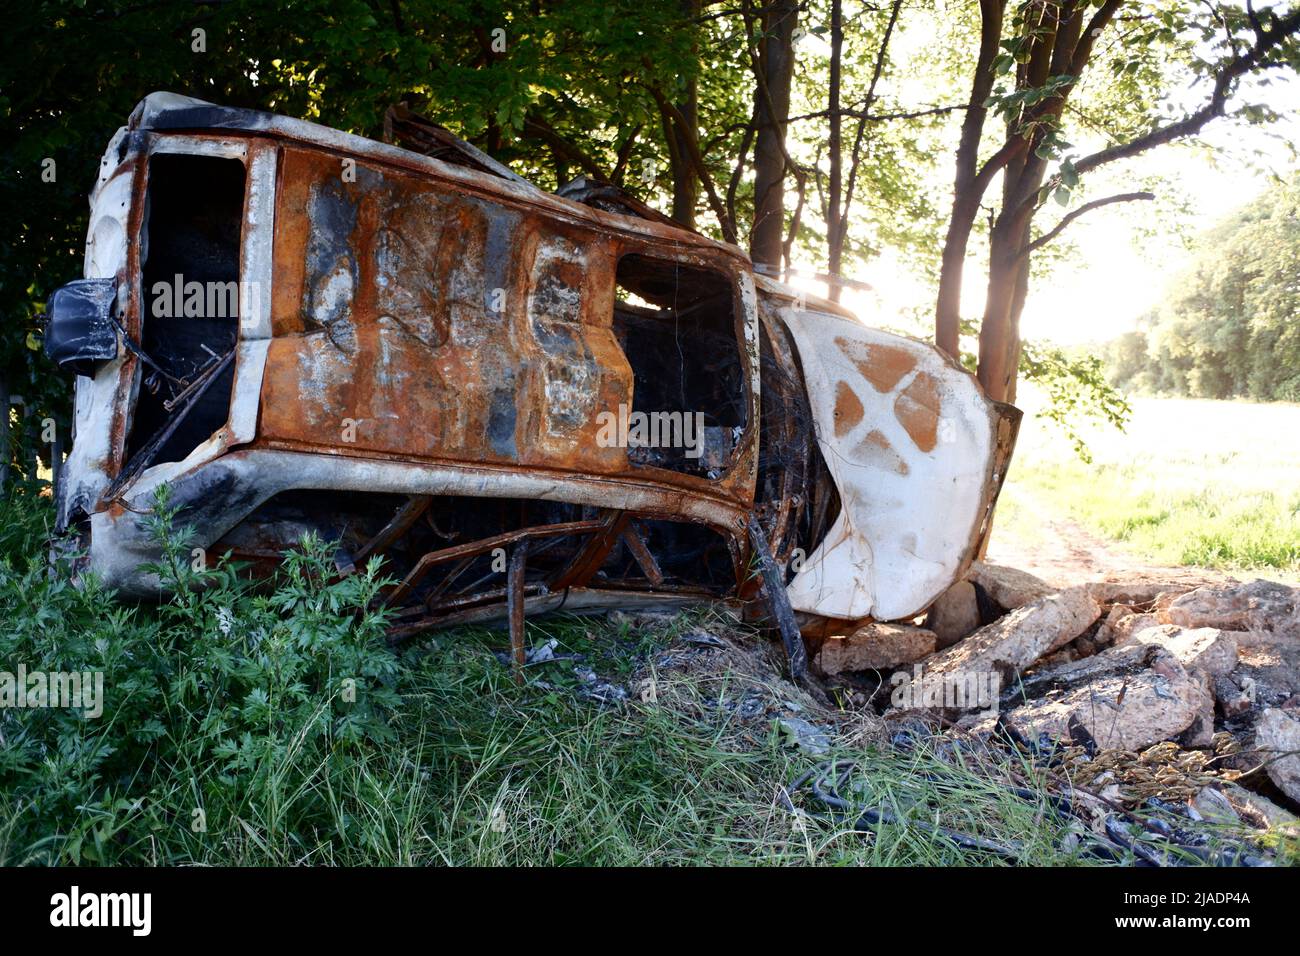 Crashed burned out abandoned car wreck in Hertfordshire England UK Stock Photo